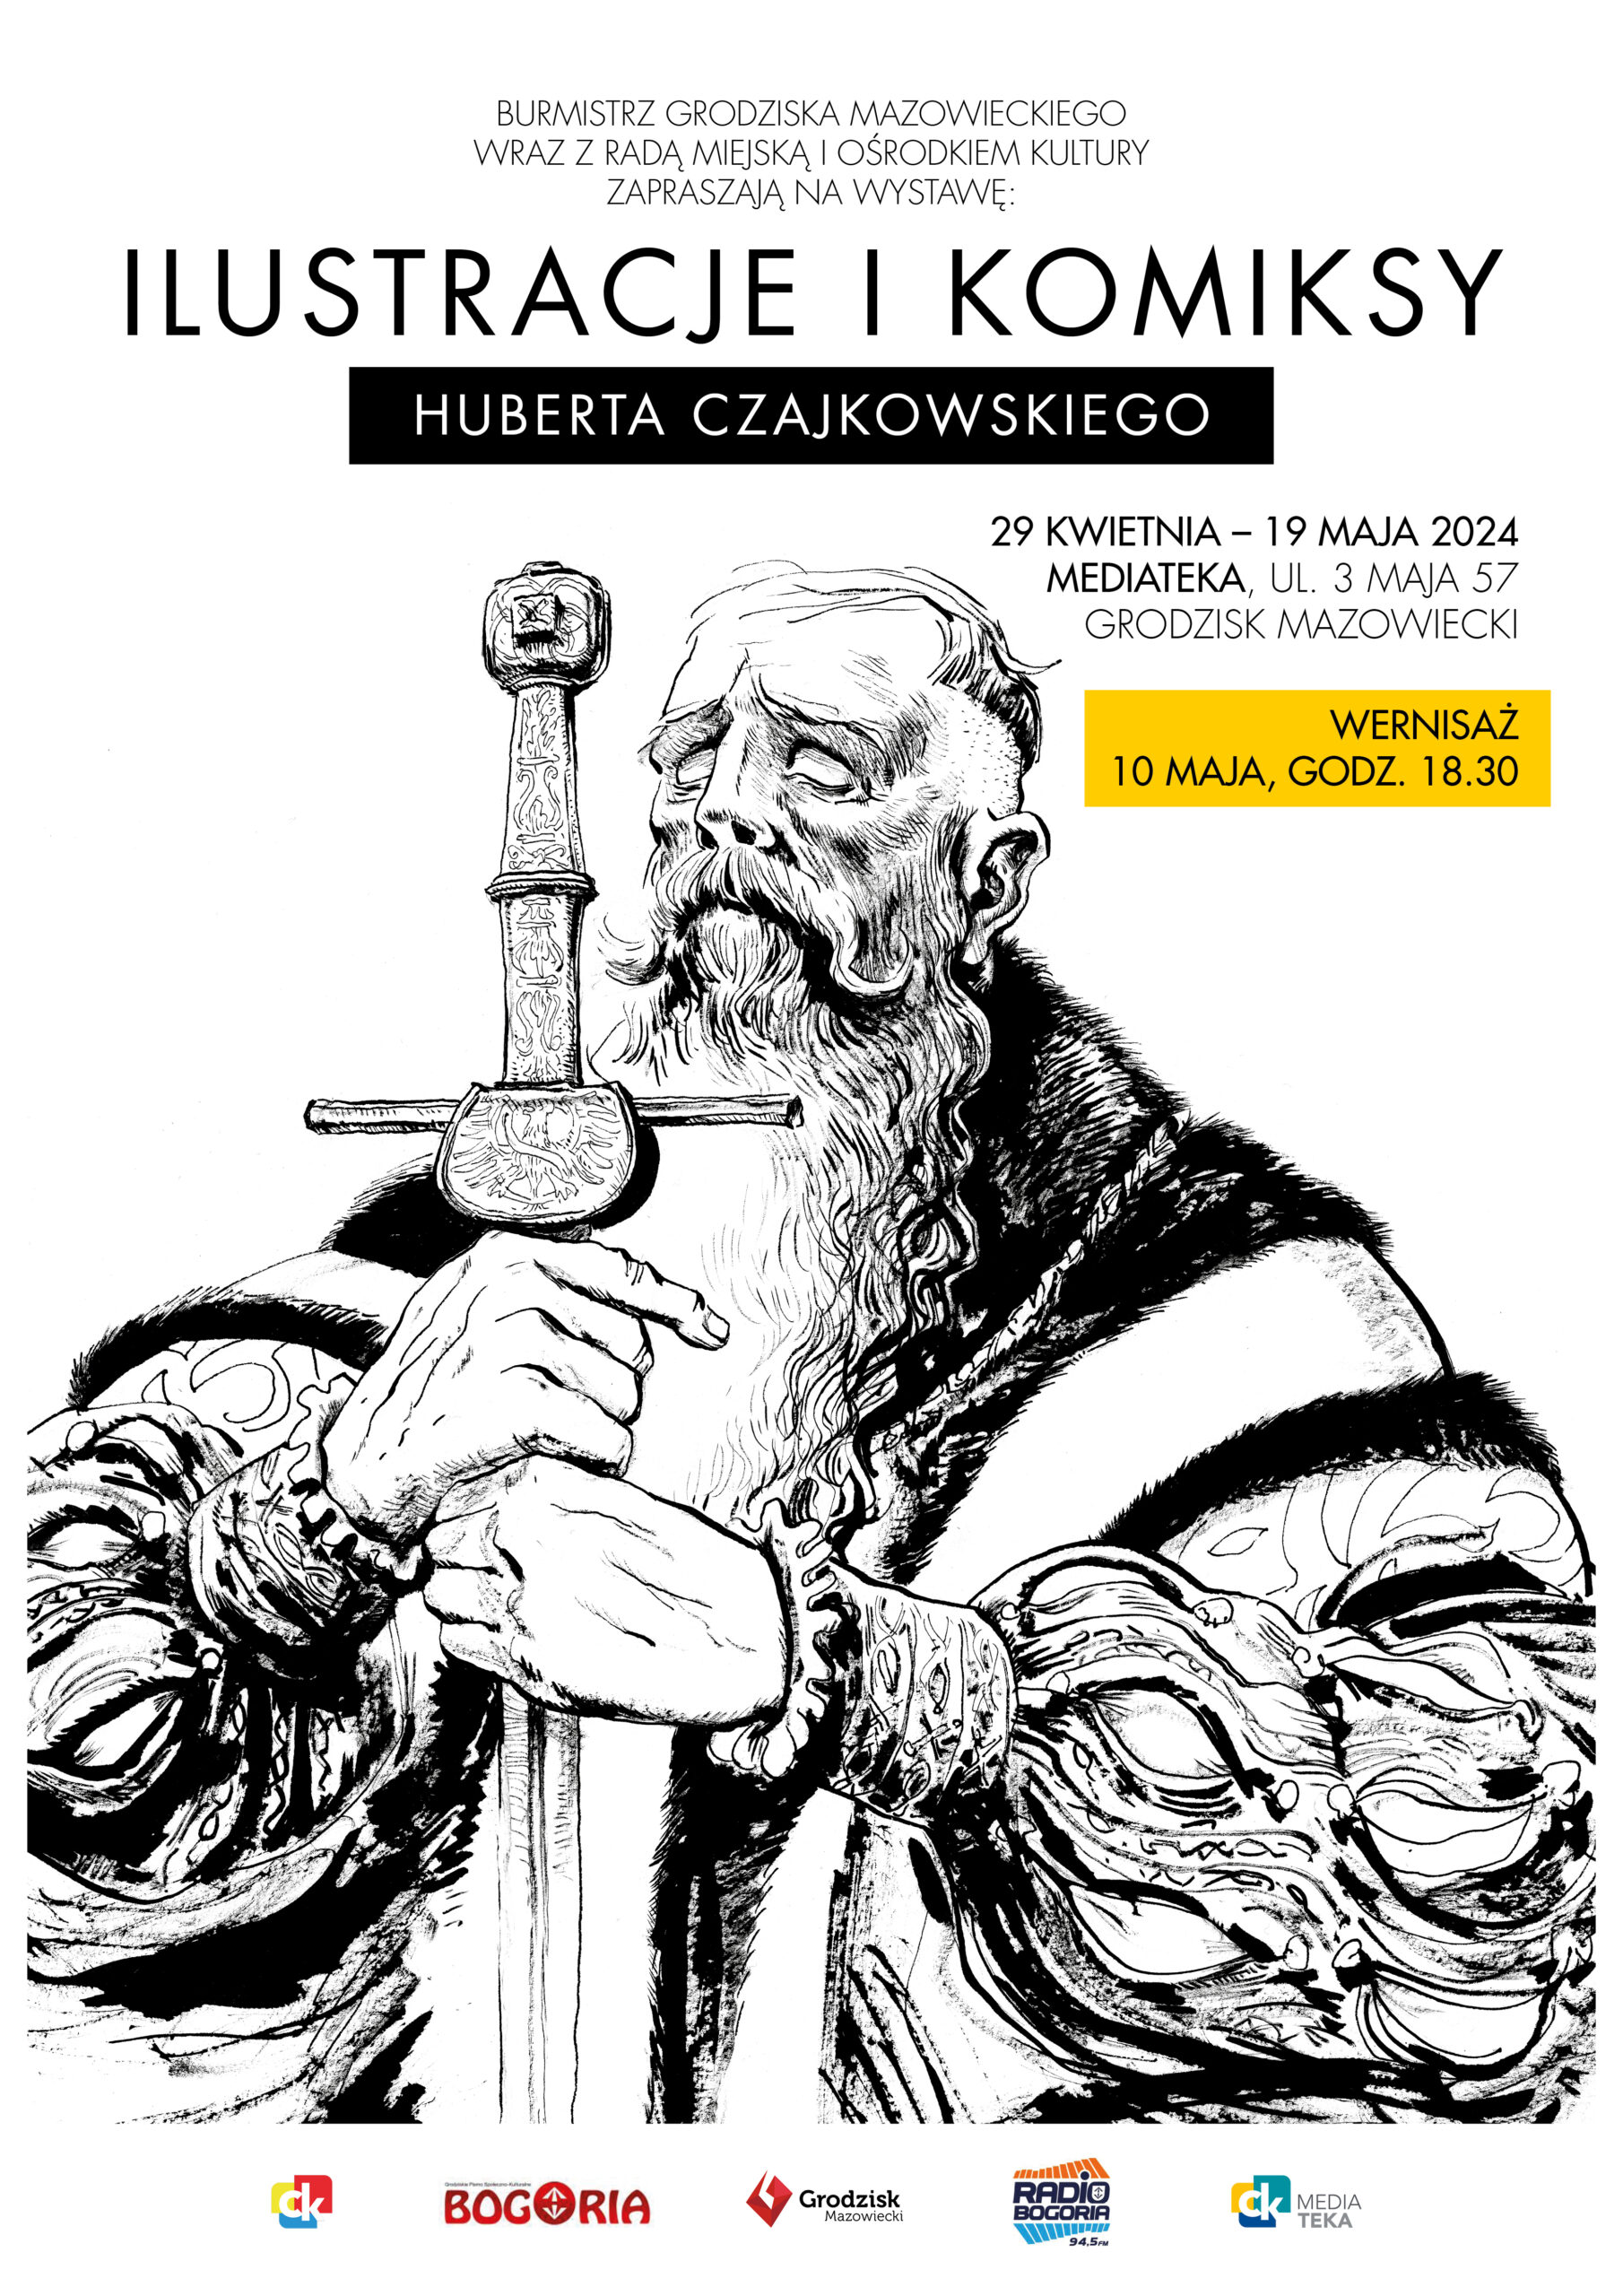 Wernisaż wystawy Huberta Czajkowskiego “Ilustracje i komiksy”